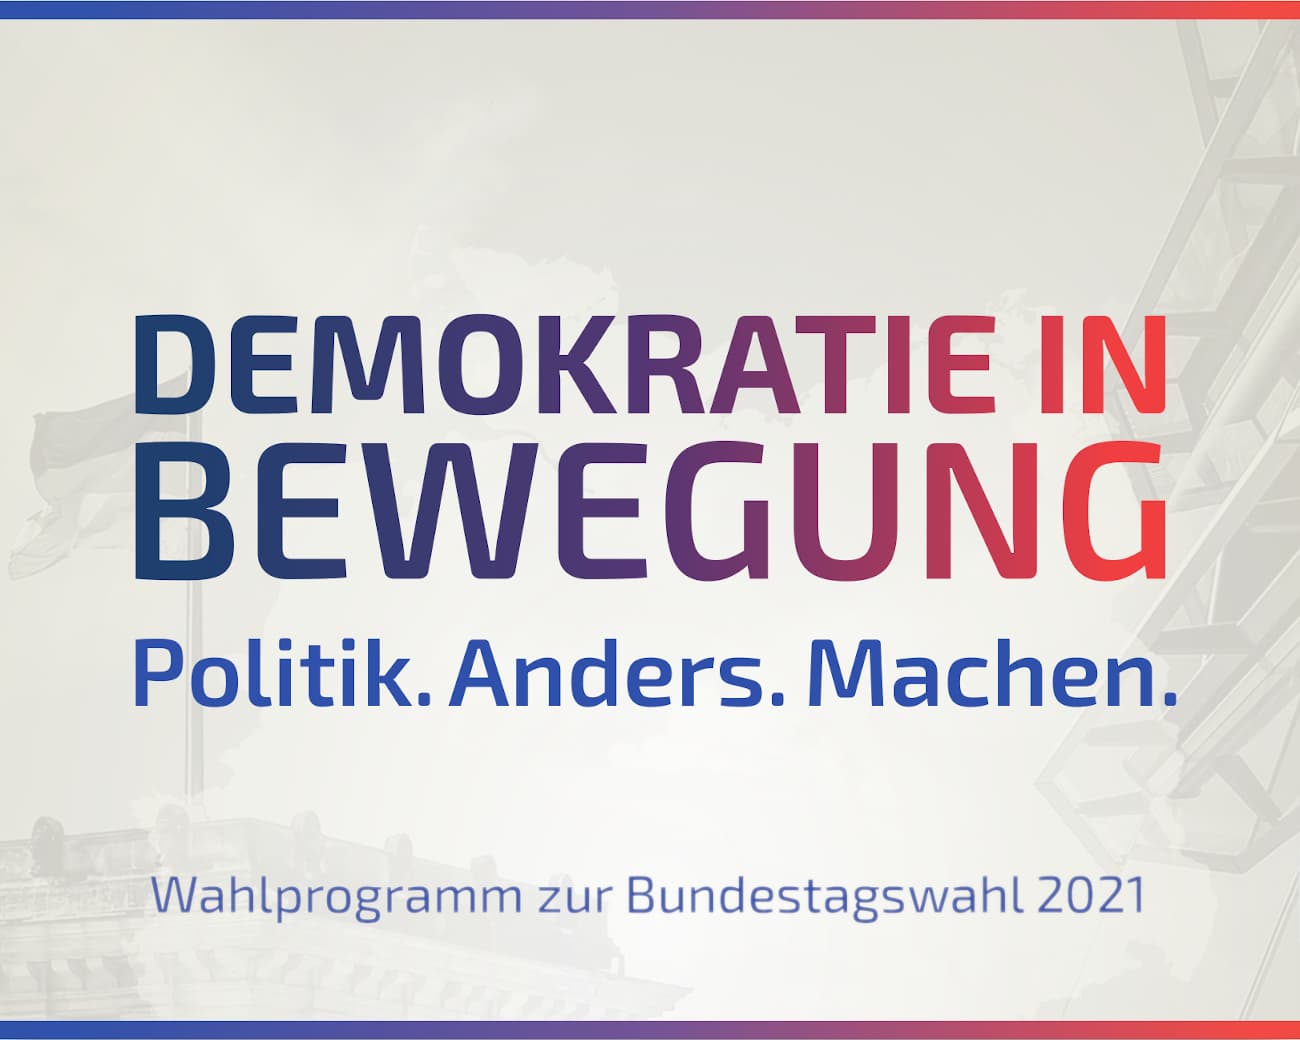 DiB (Demokratie in Bewegung) - Bundestagswahlprogramm 2021 (Programm für die Bundestagswahl)